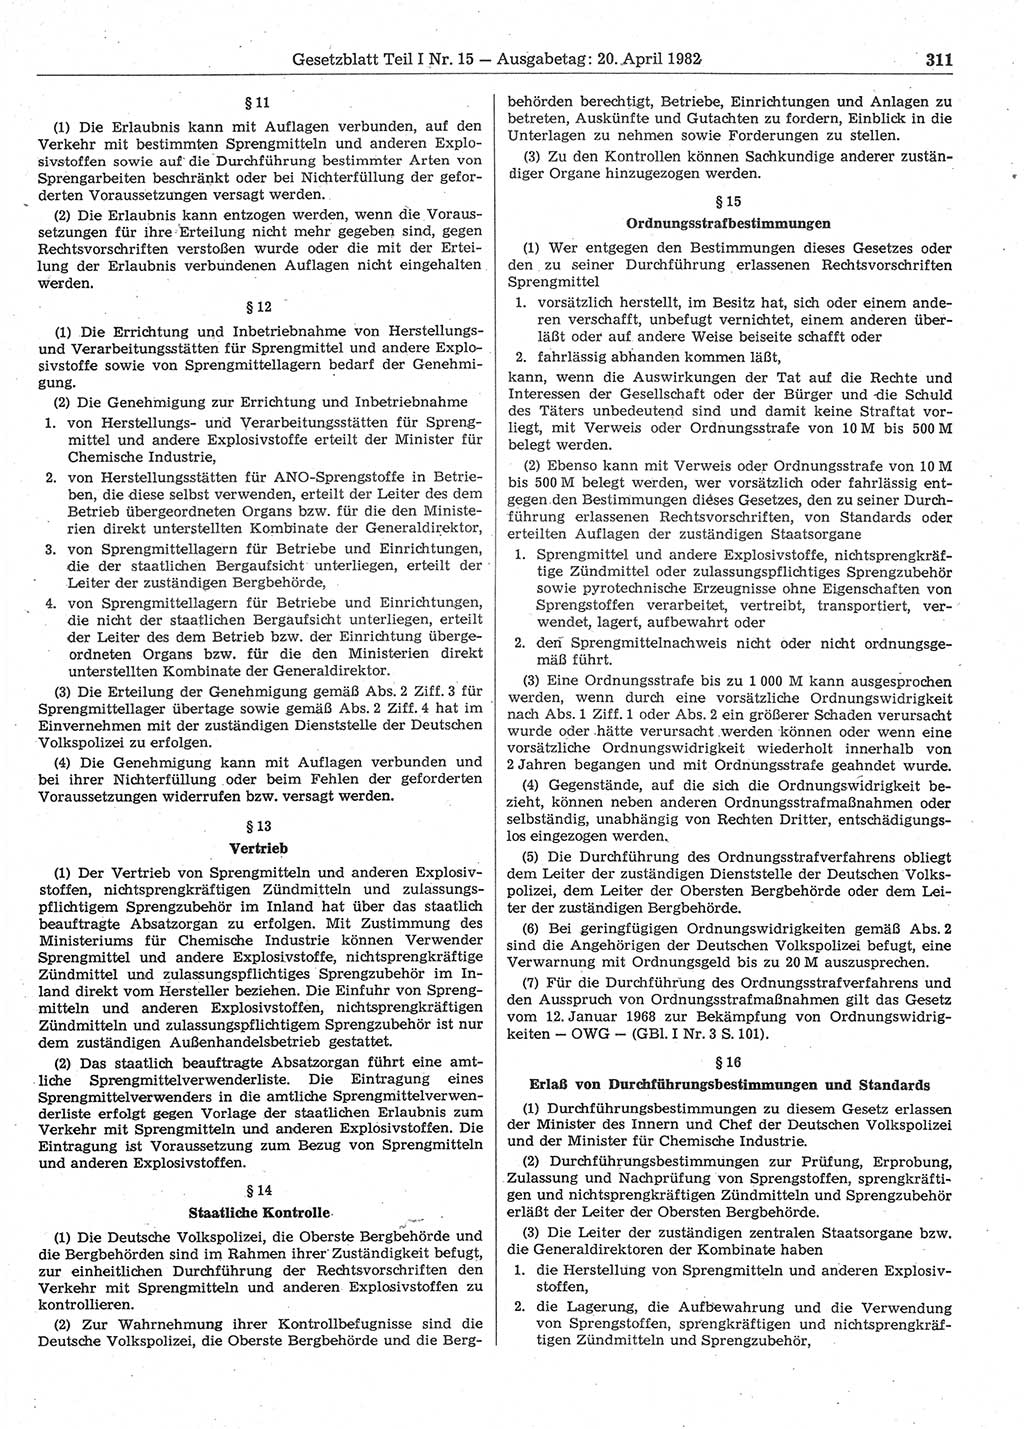 Gesetzblatt (GBl.) der Deutschen Demokratischen Republik (DDR) Teil Ⅰ 1982, Seite 311 (GBl. DDR Ⅰ 1982, S. 311)